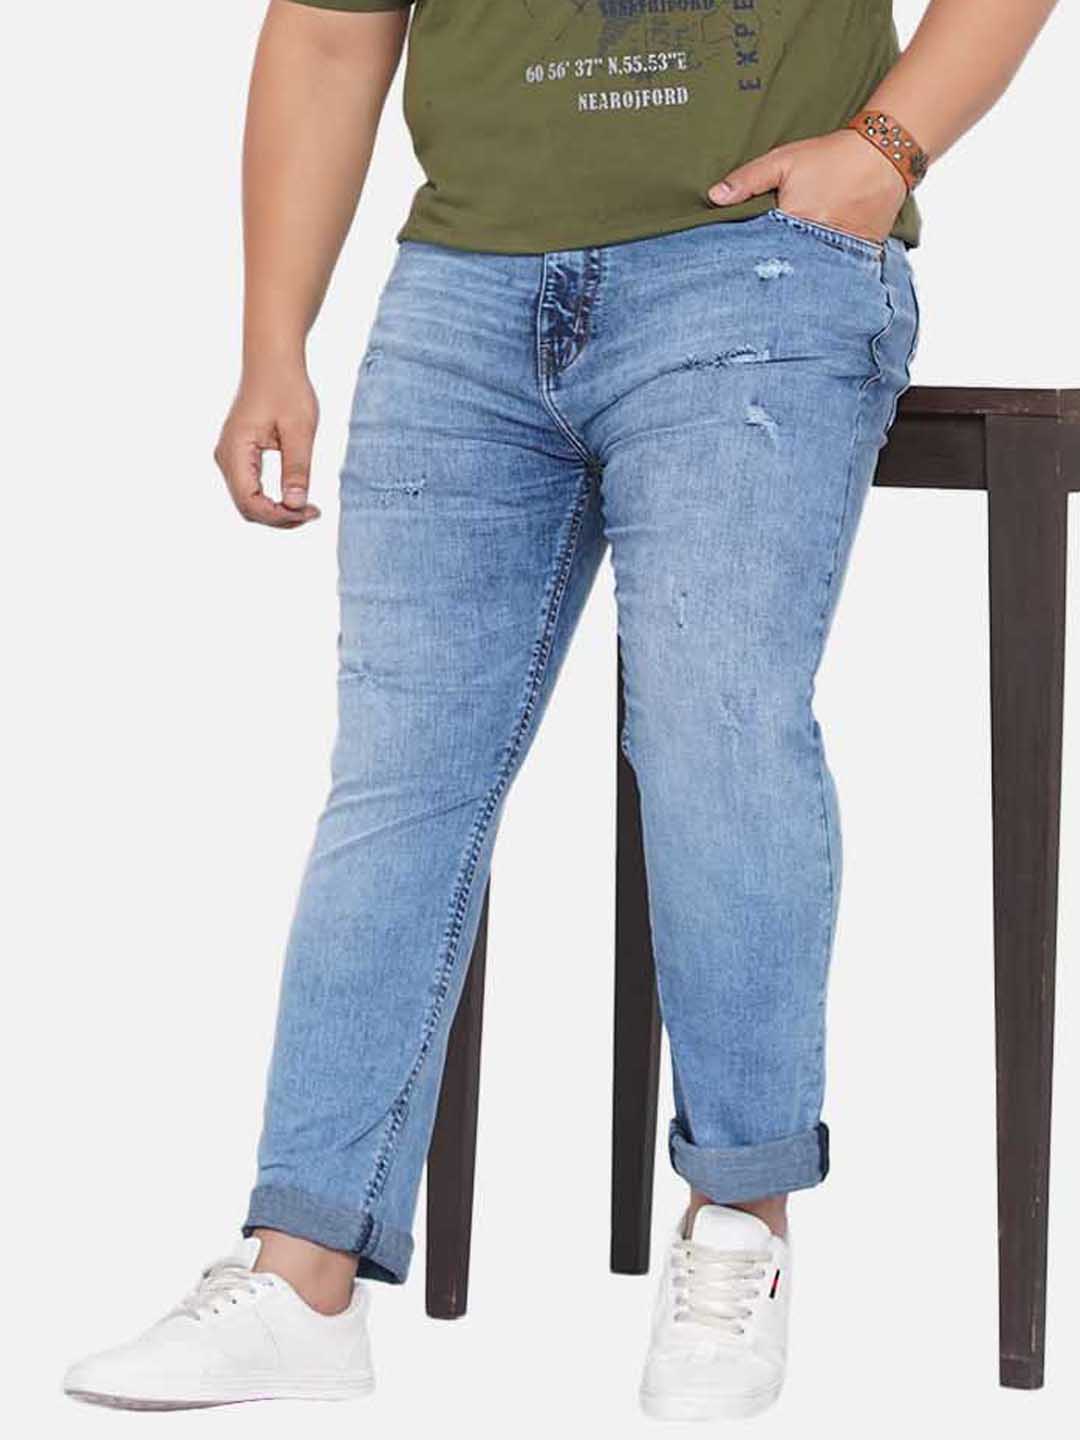 bottomwear/jeans/JPJ12200/jpj12200-1.jpg